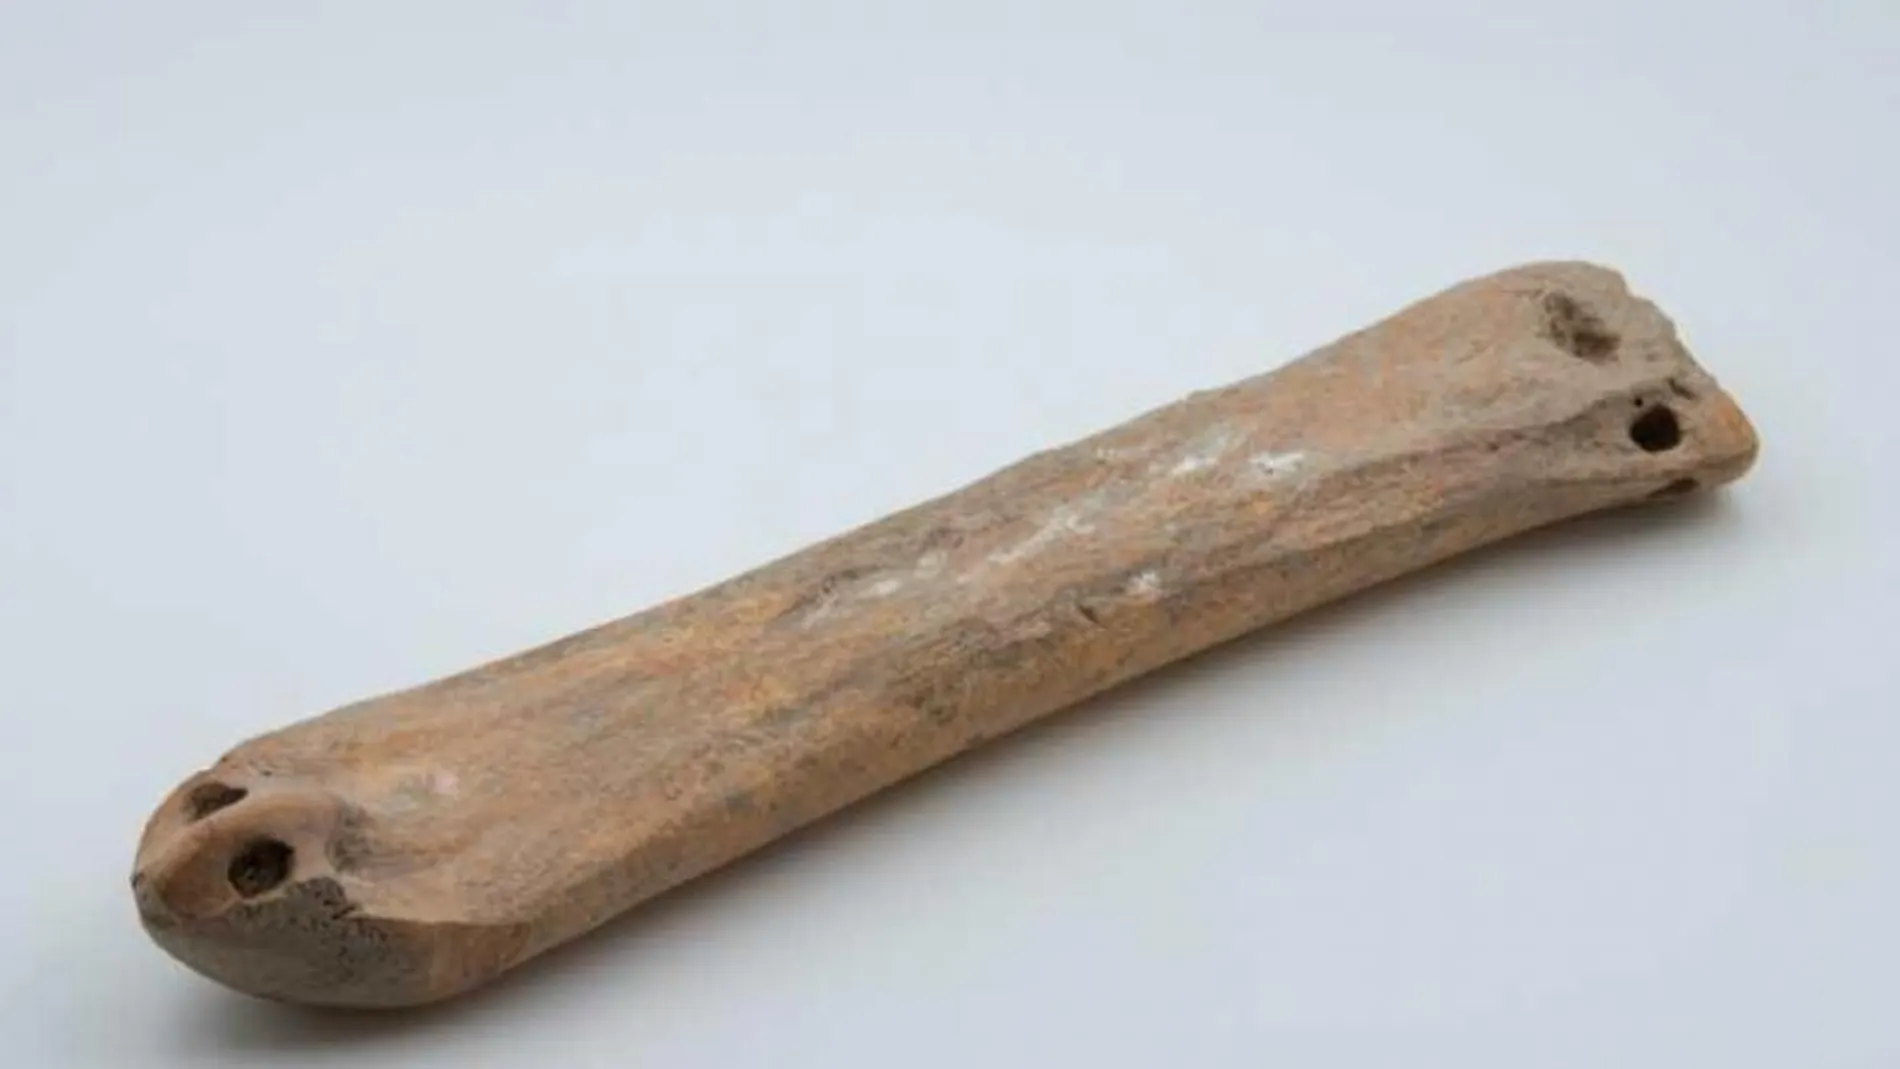 Descubren unos patines de hielo de hace 3.500 años hechos con huesos